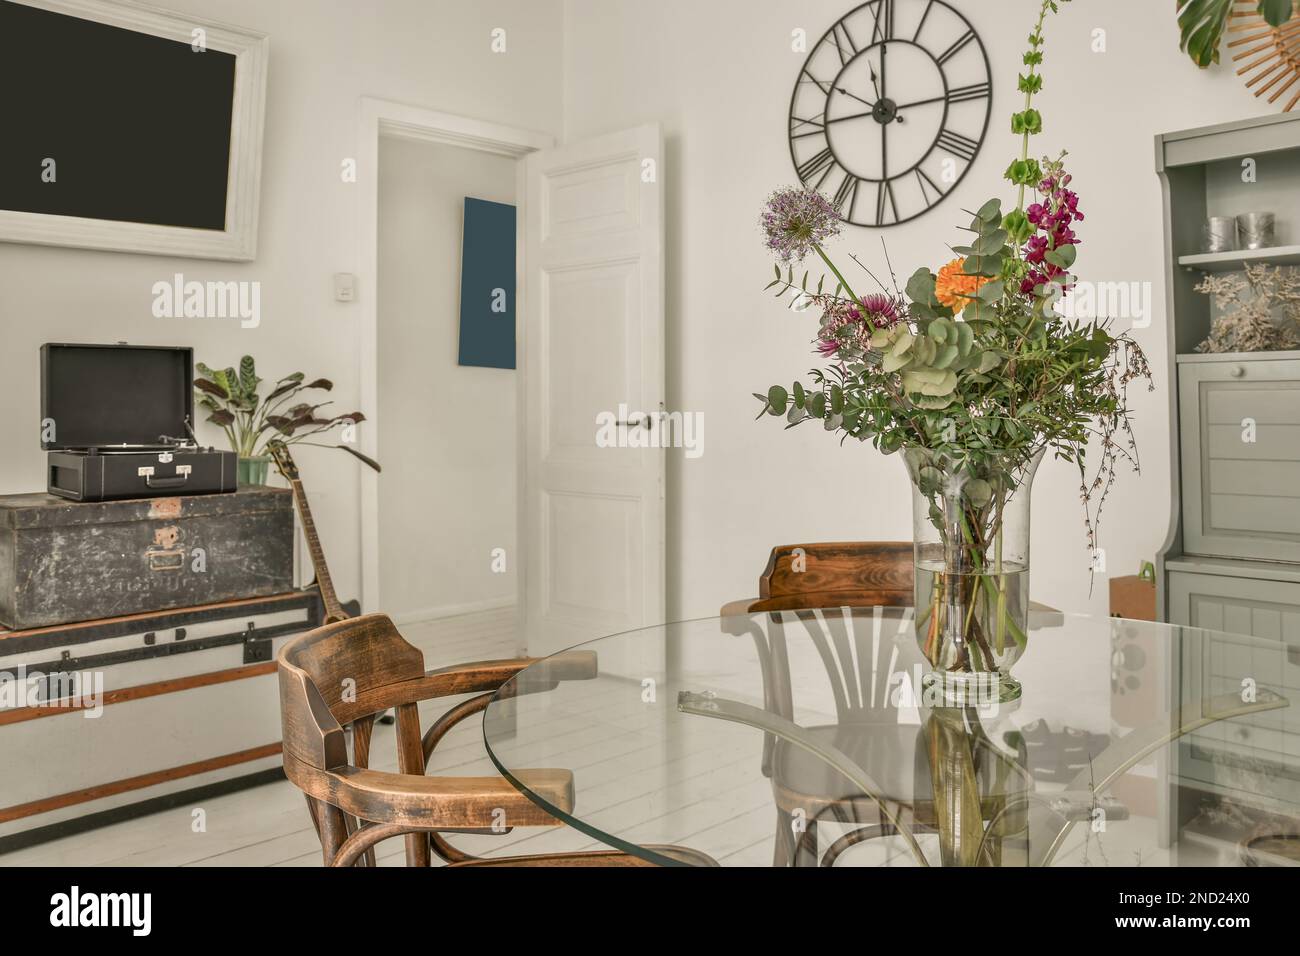 Innendesign des Esszimmers mit Glastisch, dekoriert mit Blumen in Vase  neben Regalen und Fernseher Stockfotografie - Alamy